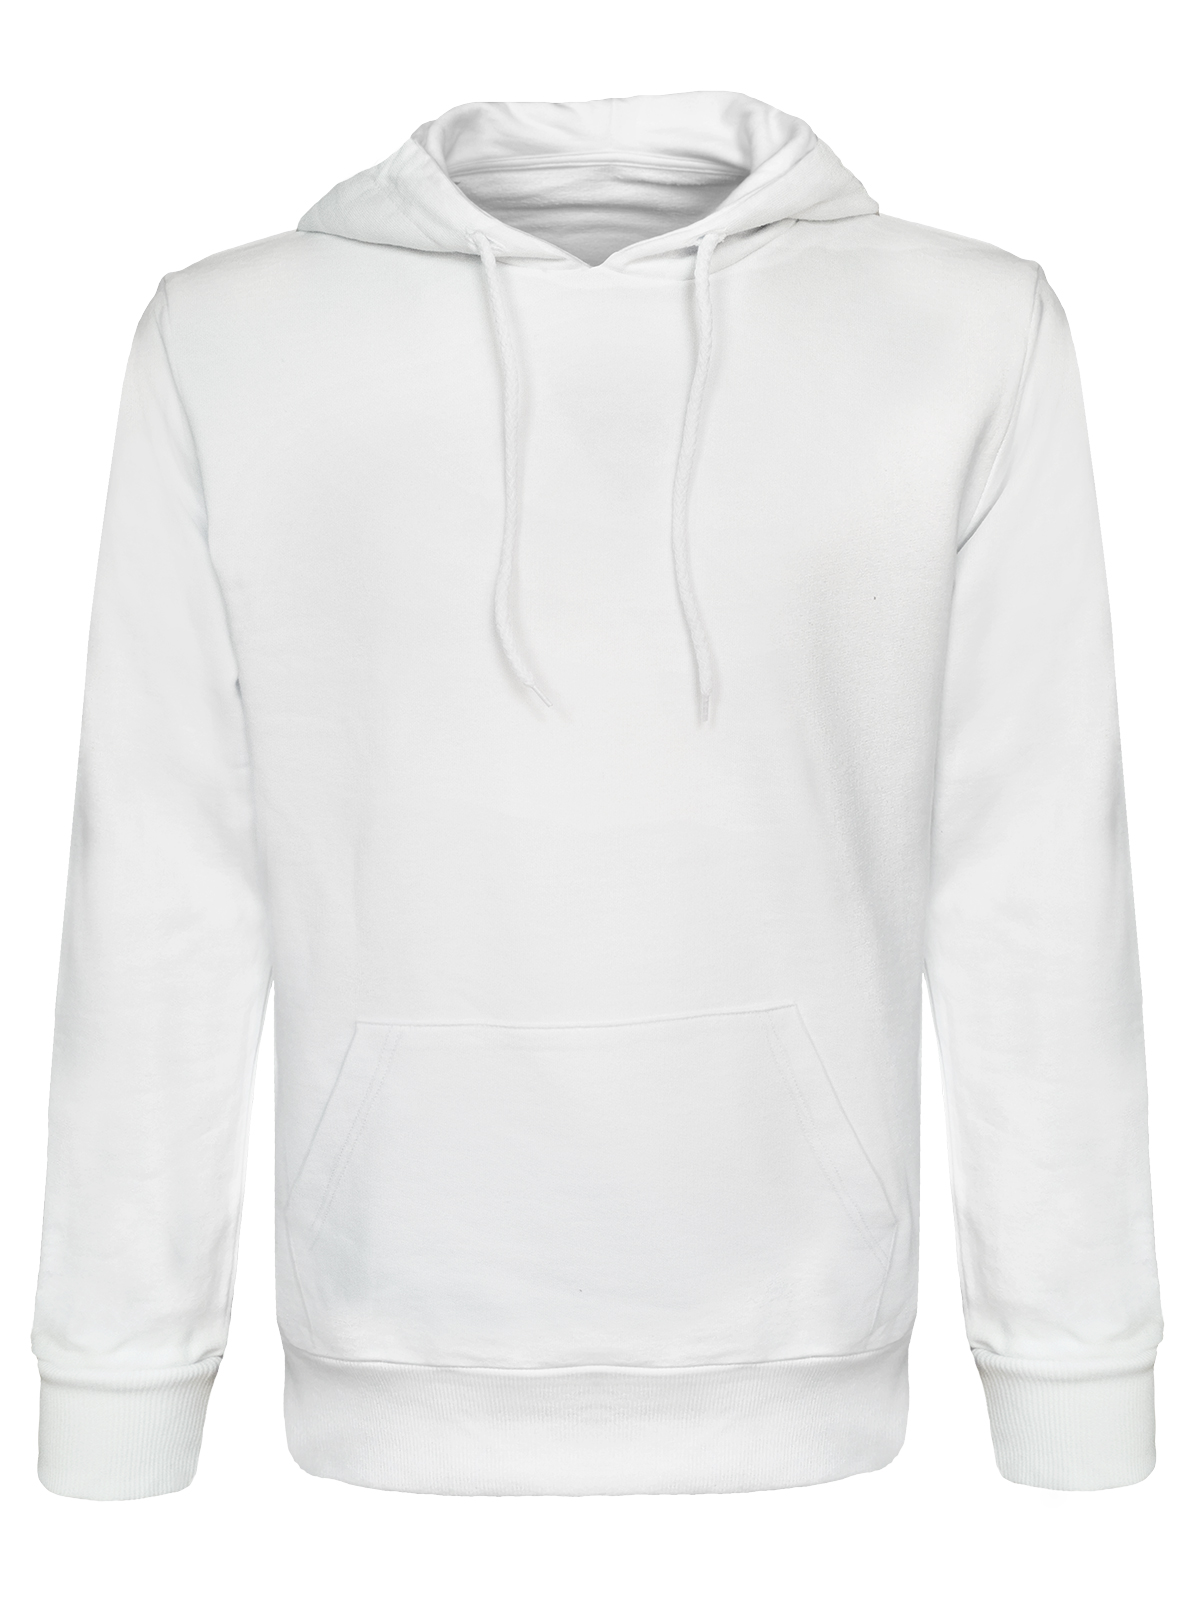 hooded-italy-white.webp